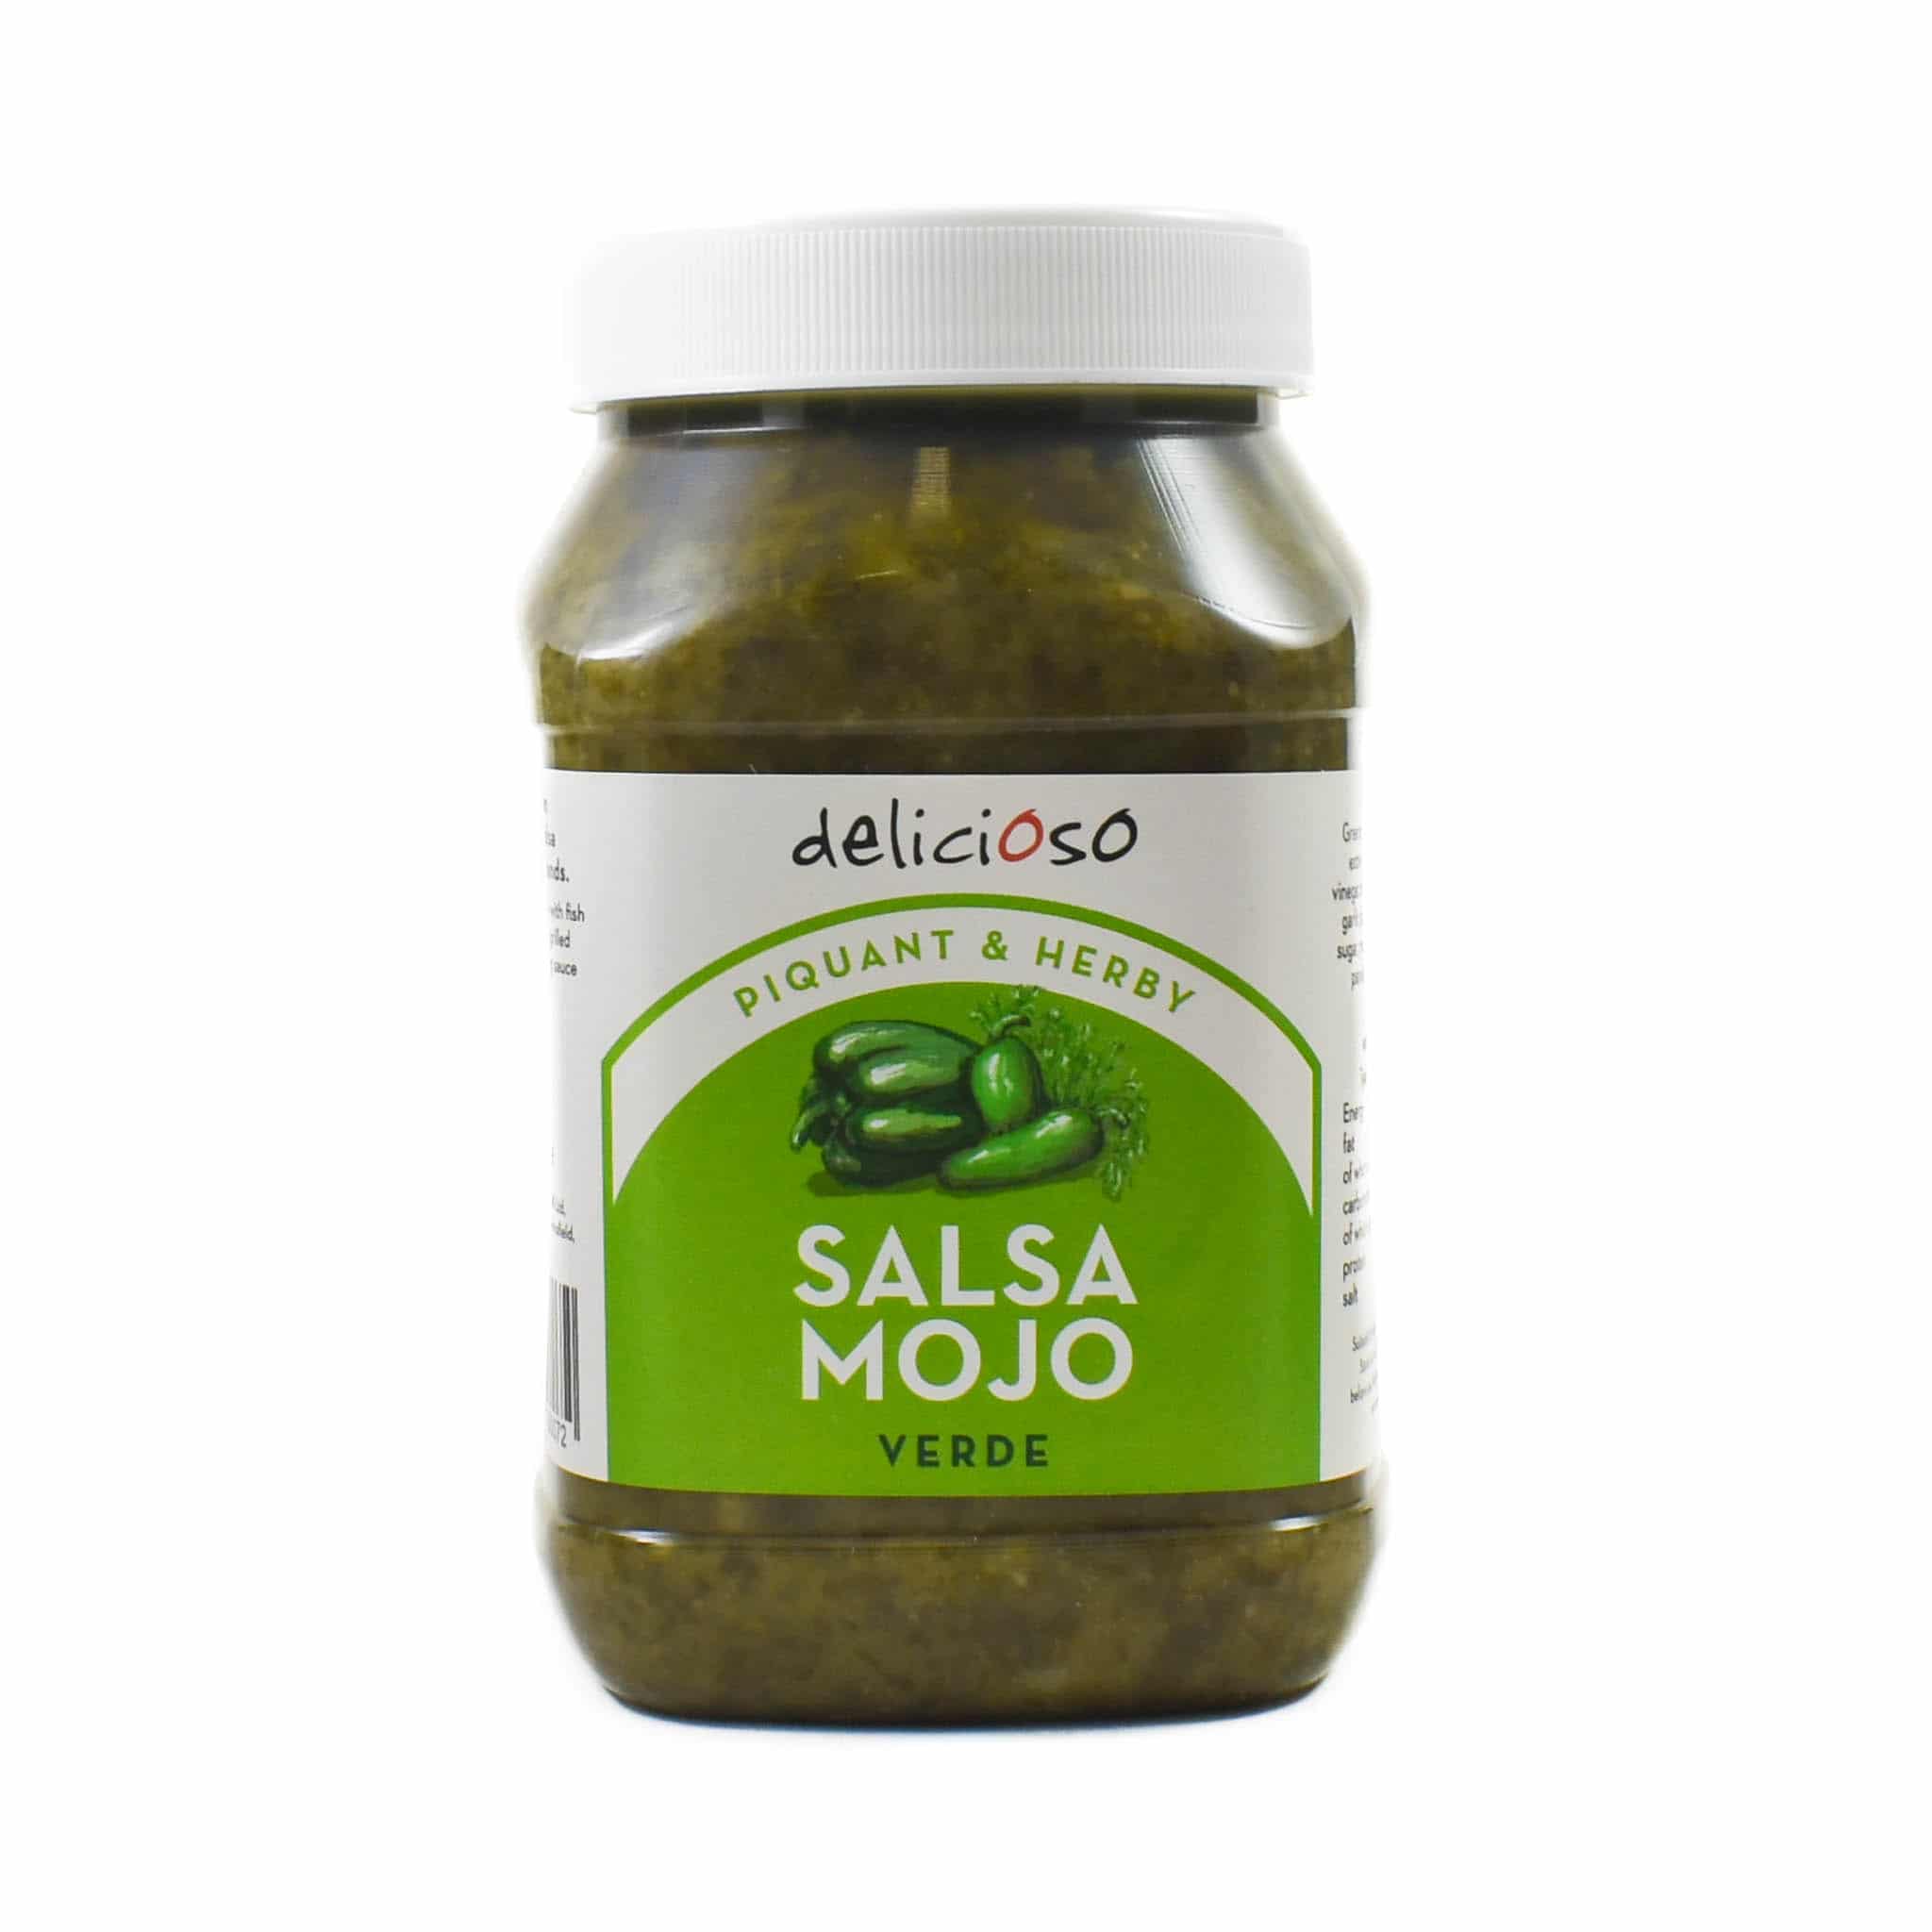 Delicioso Salsa Mojo Verde